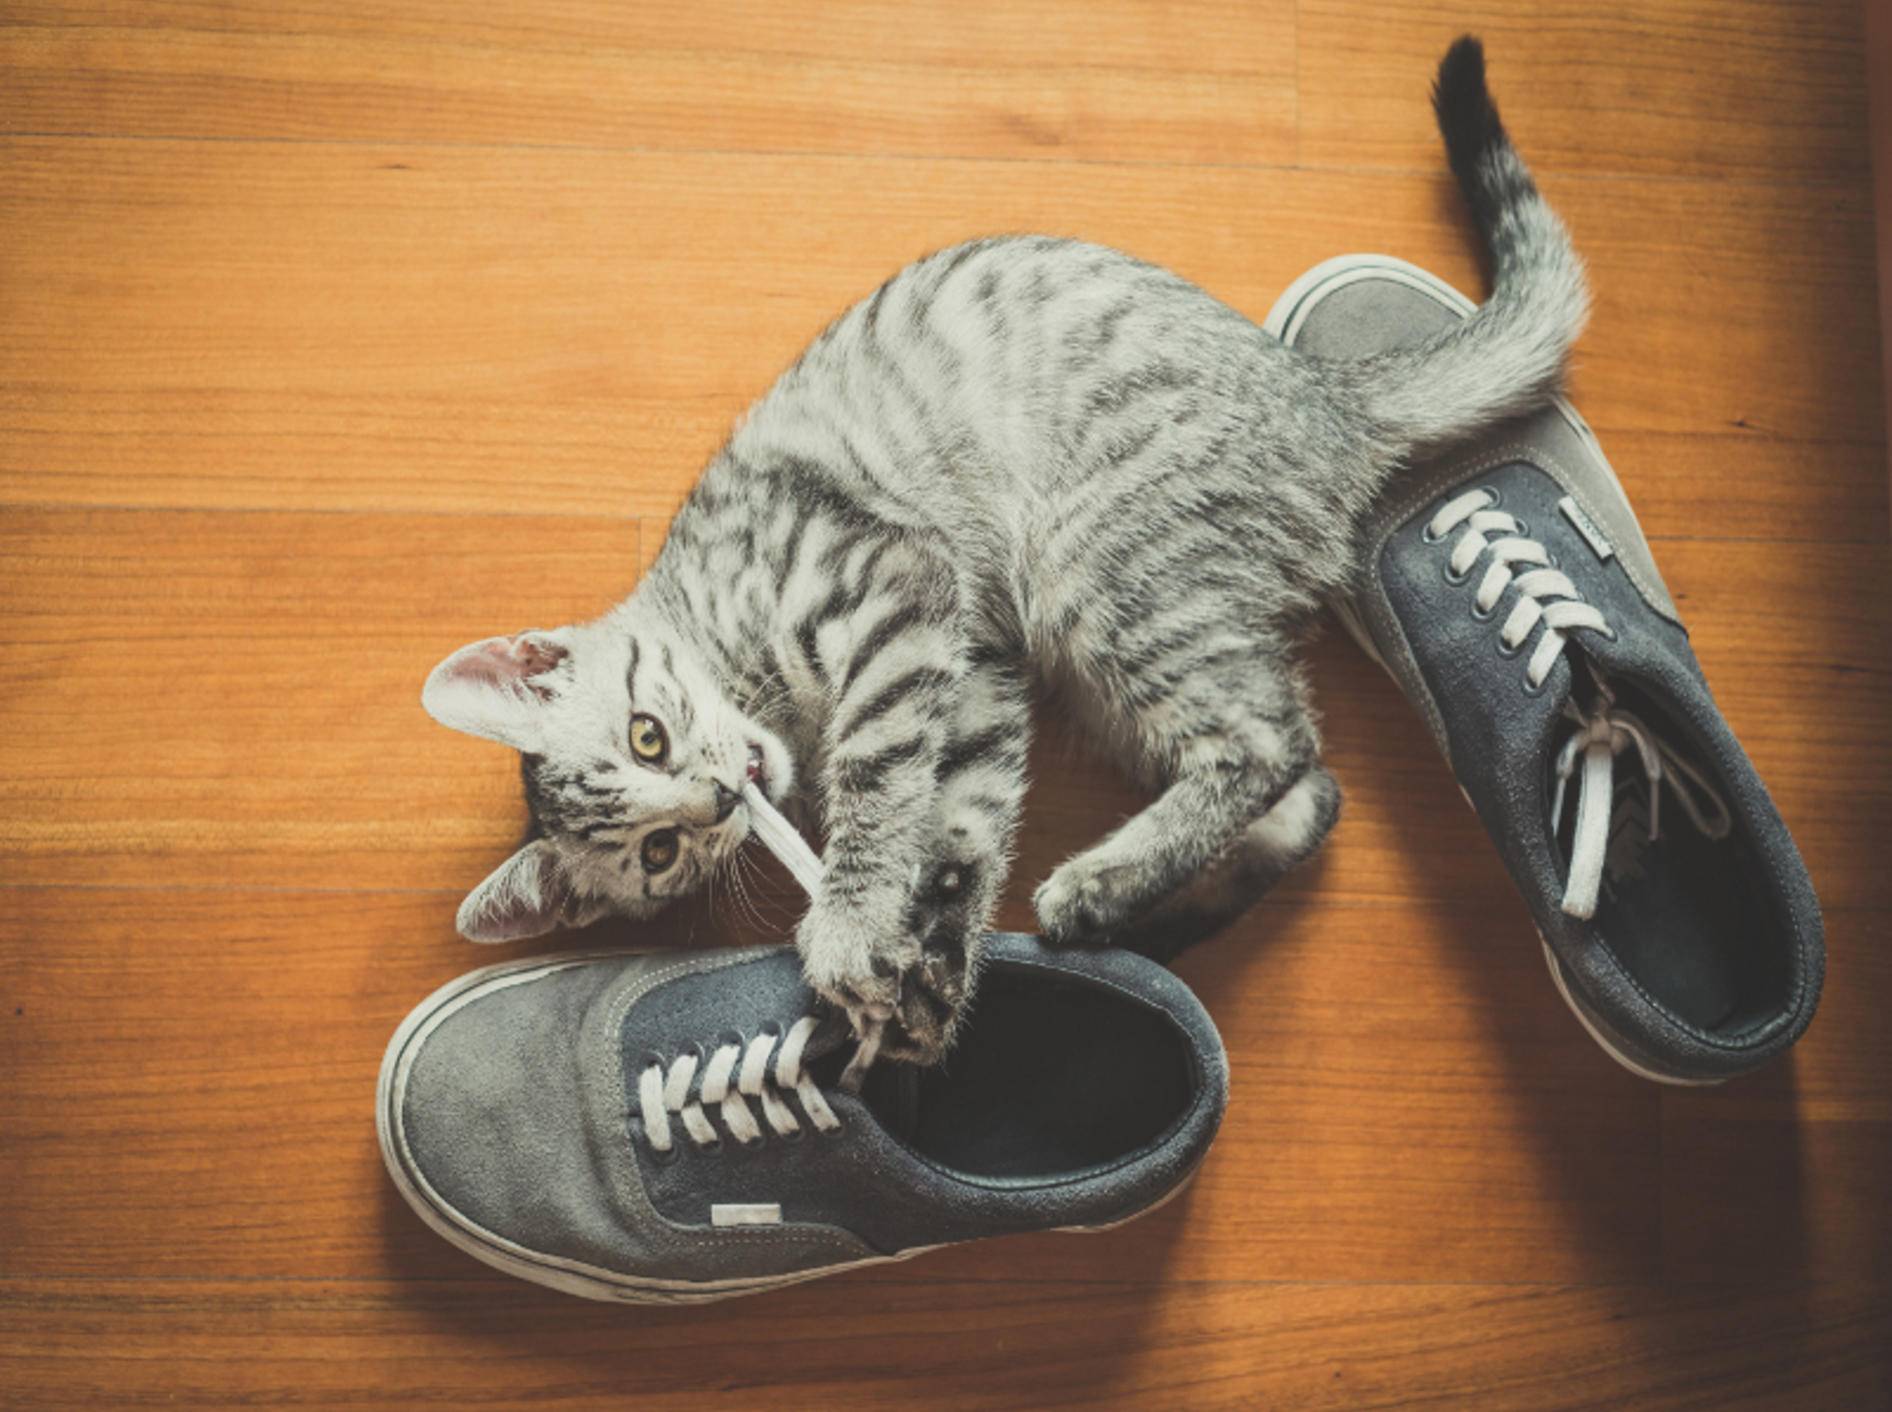 Die kleine Katze knabbert aus Langeweile am Schnürsenkel – Shutterstock / Eugenio Marangiu